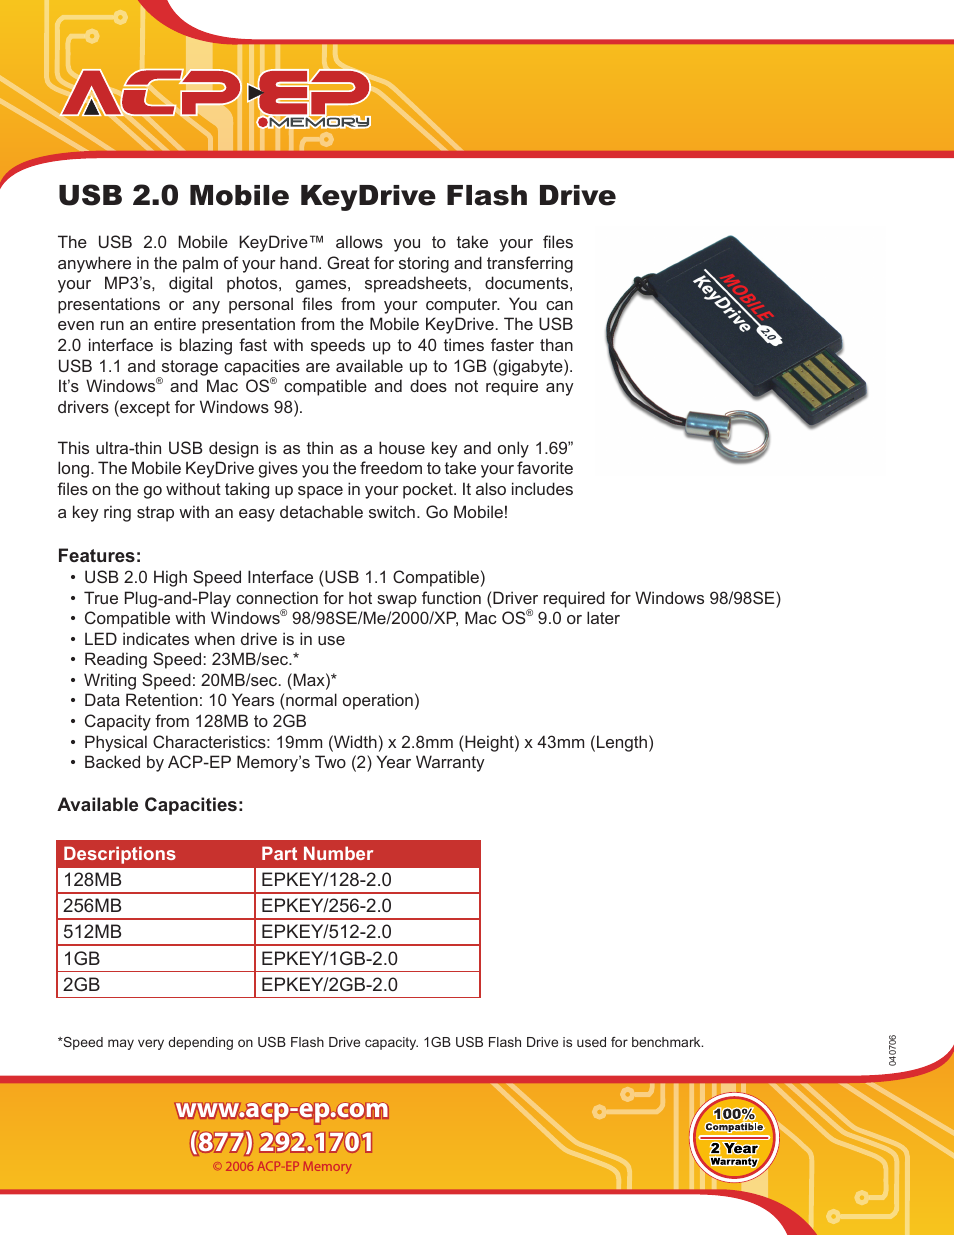 KeyDrive EPKEY/512-2.0